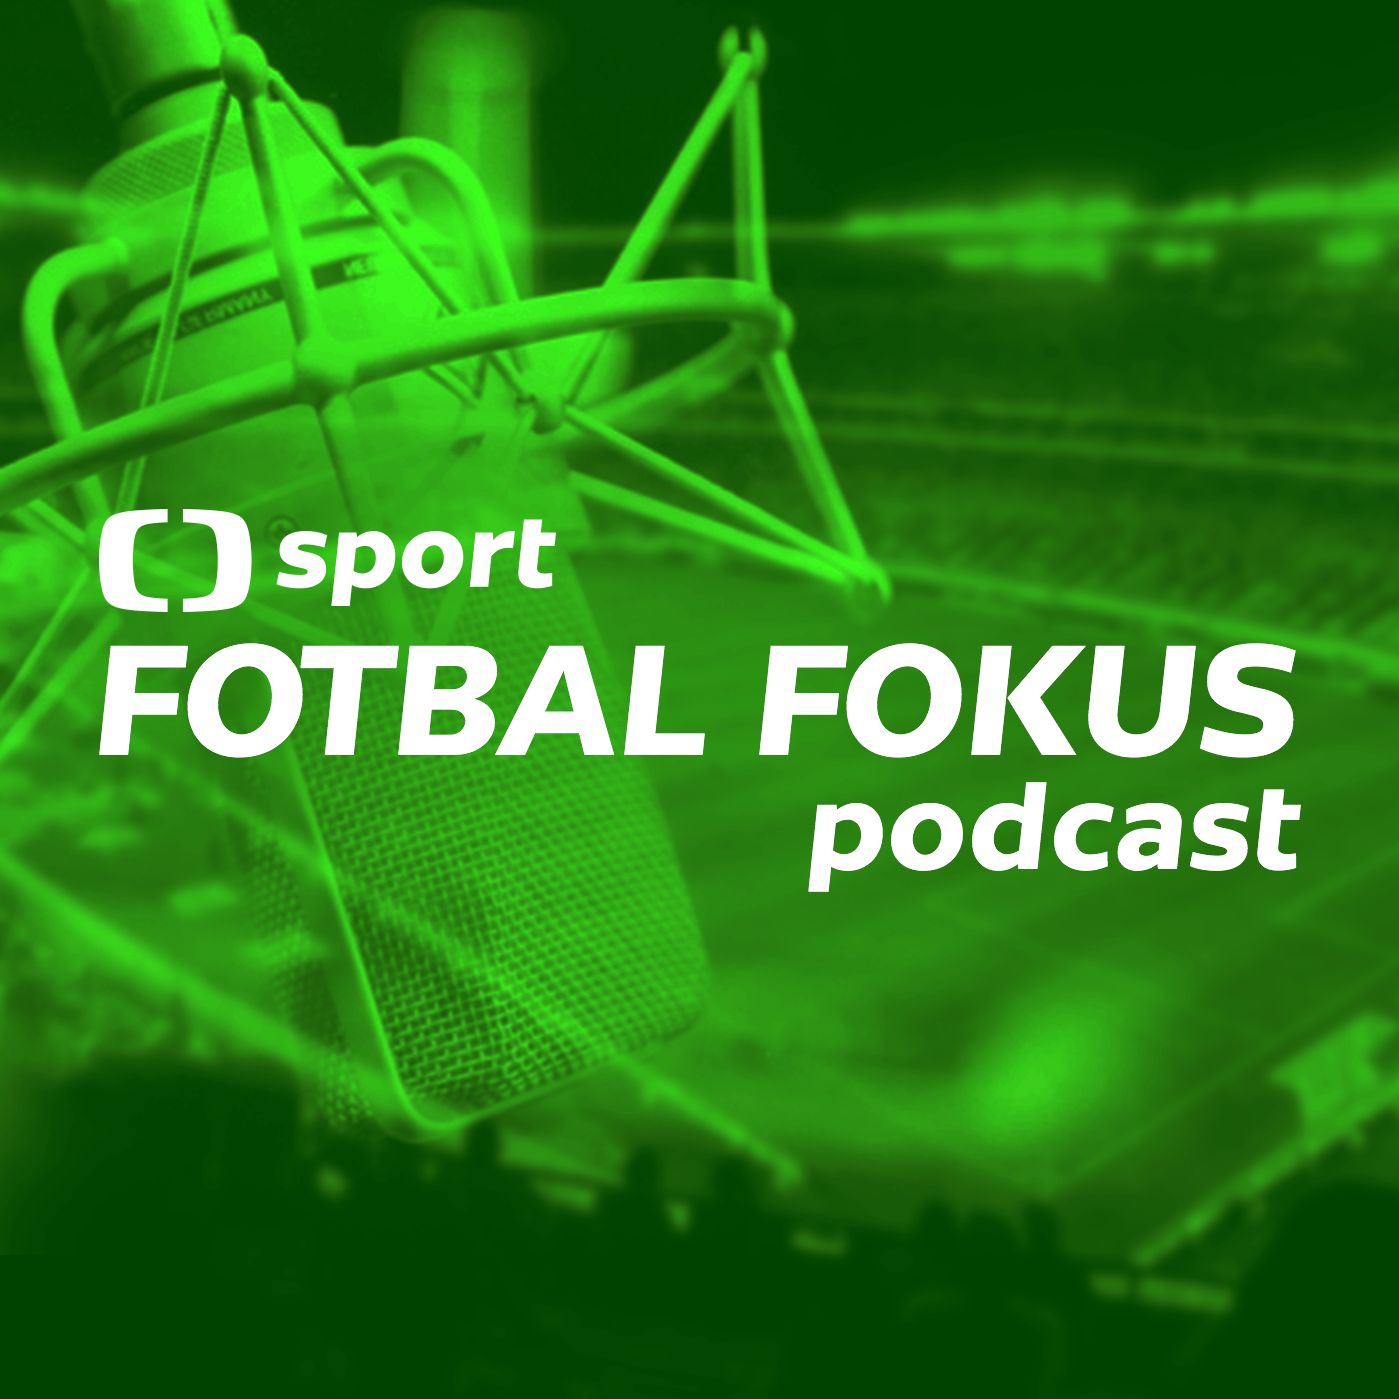 Fotbal fokus podcast: Je Pavel Hapal správným trenérem pro Spartu?